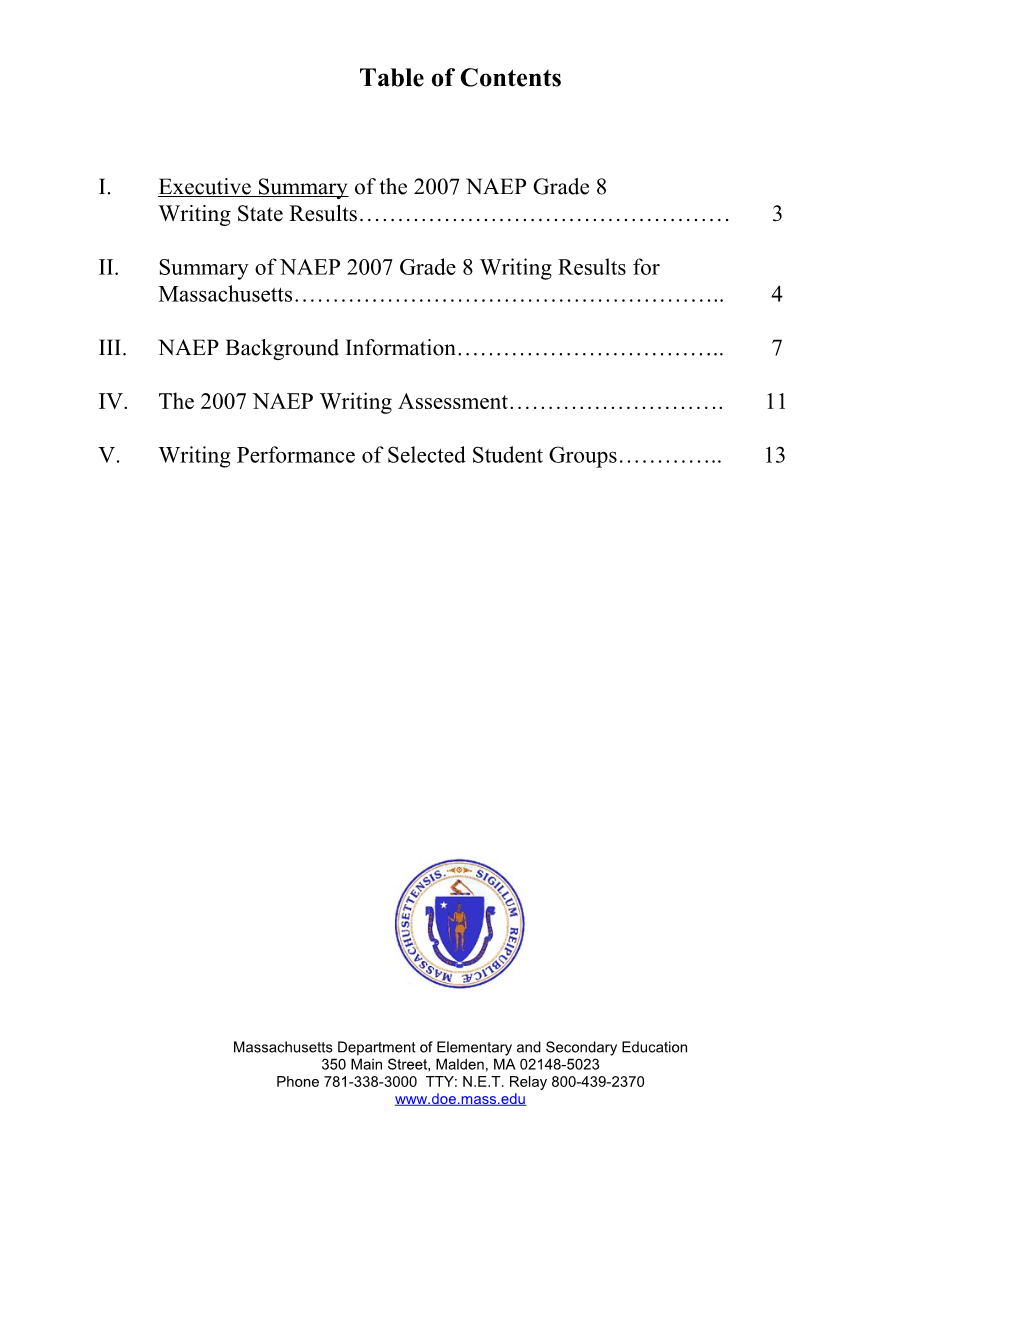 2007 NAEP Writnig Results for Massachusetts